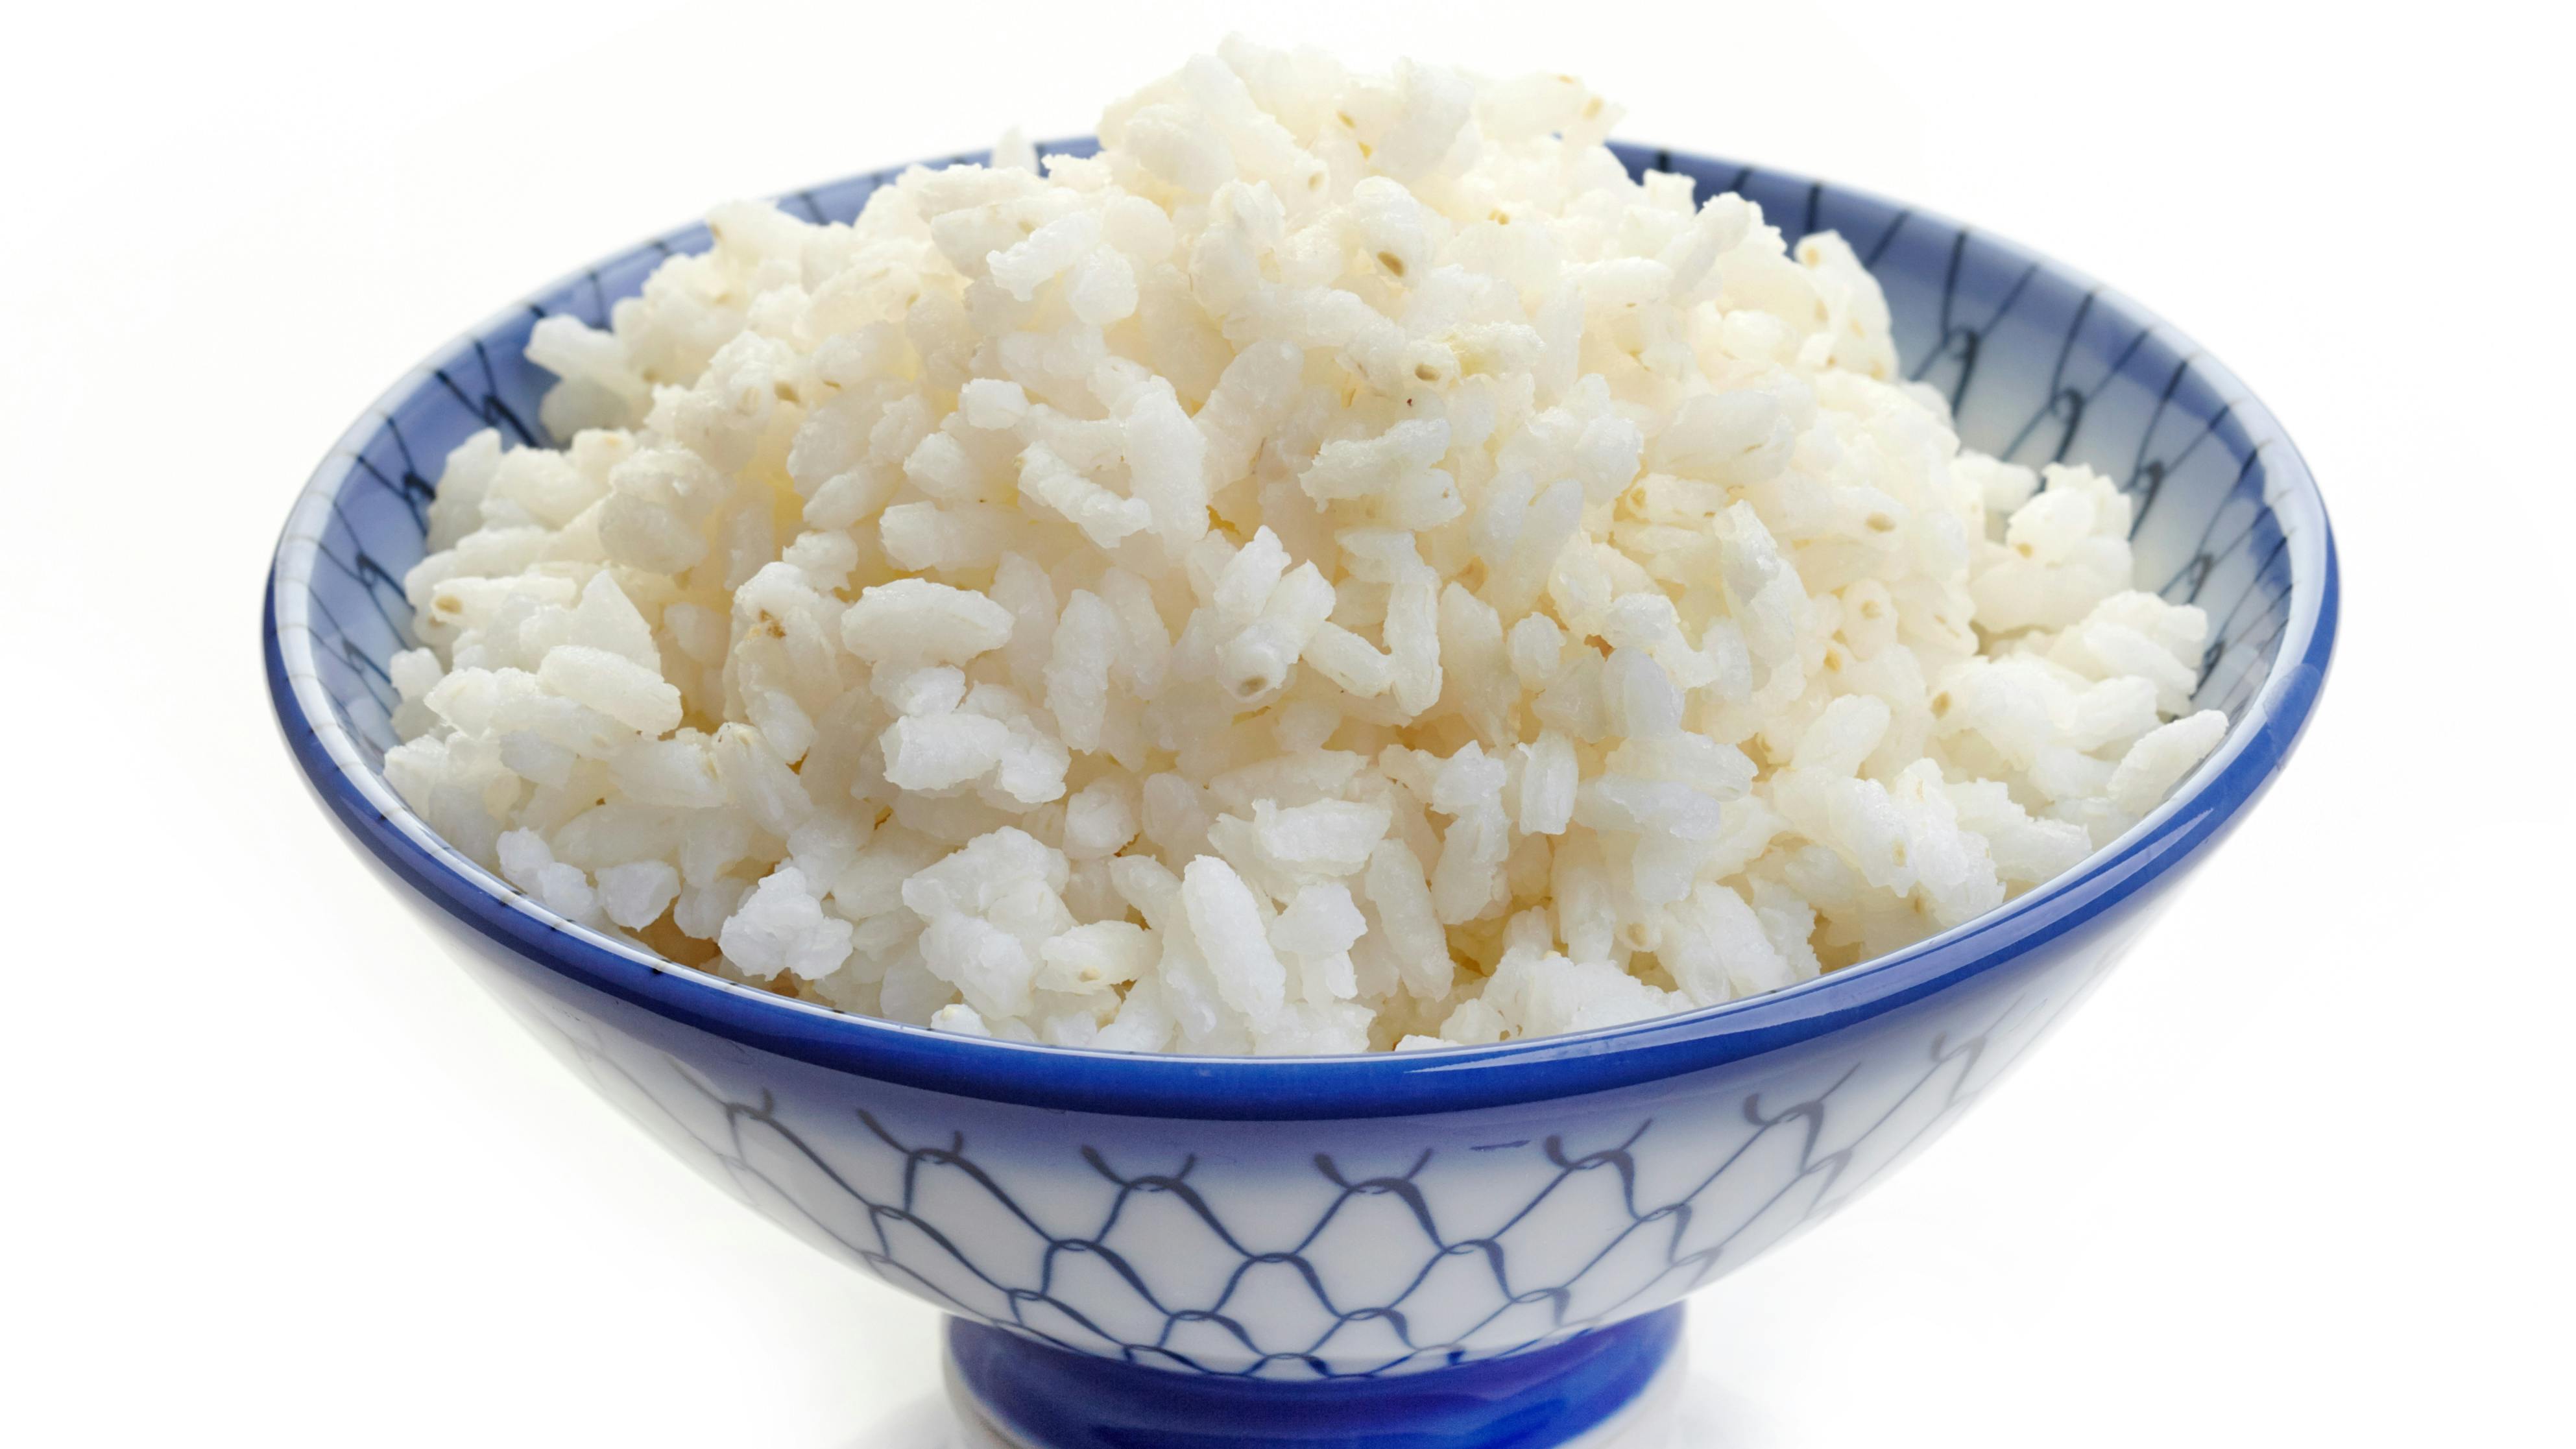 Skal du have ris til aftensmad, kræver det fremover lidt planlægning. 